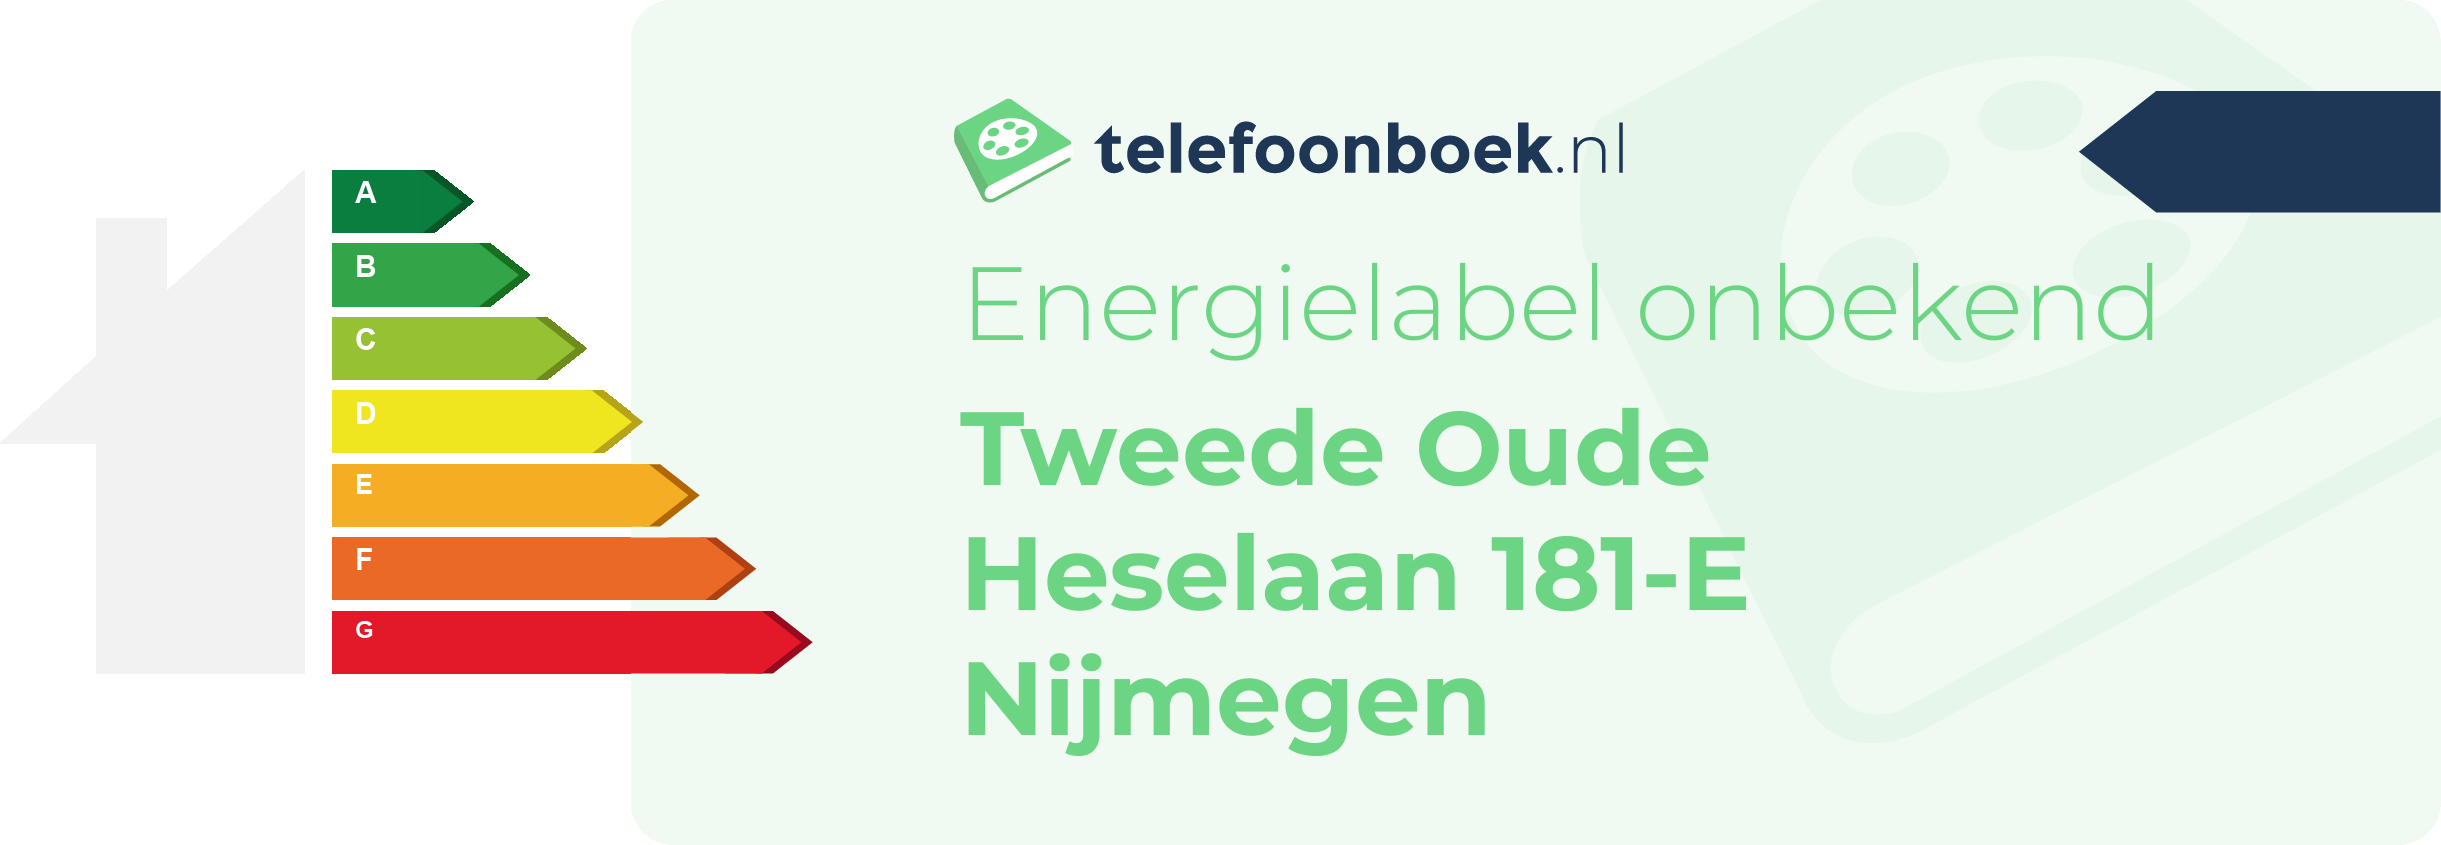 Energielabel Tweede Oude Heselaan 181-E Nijmegen